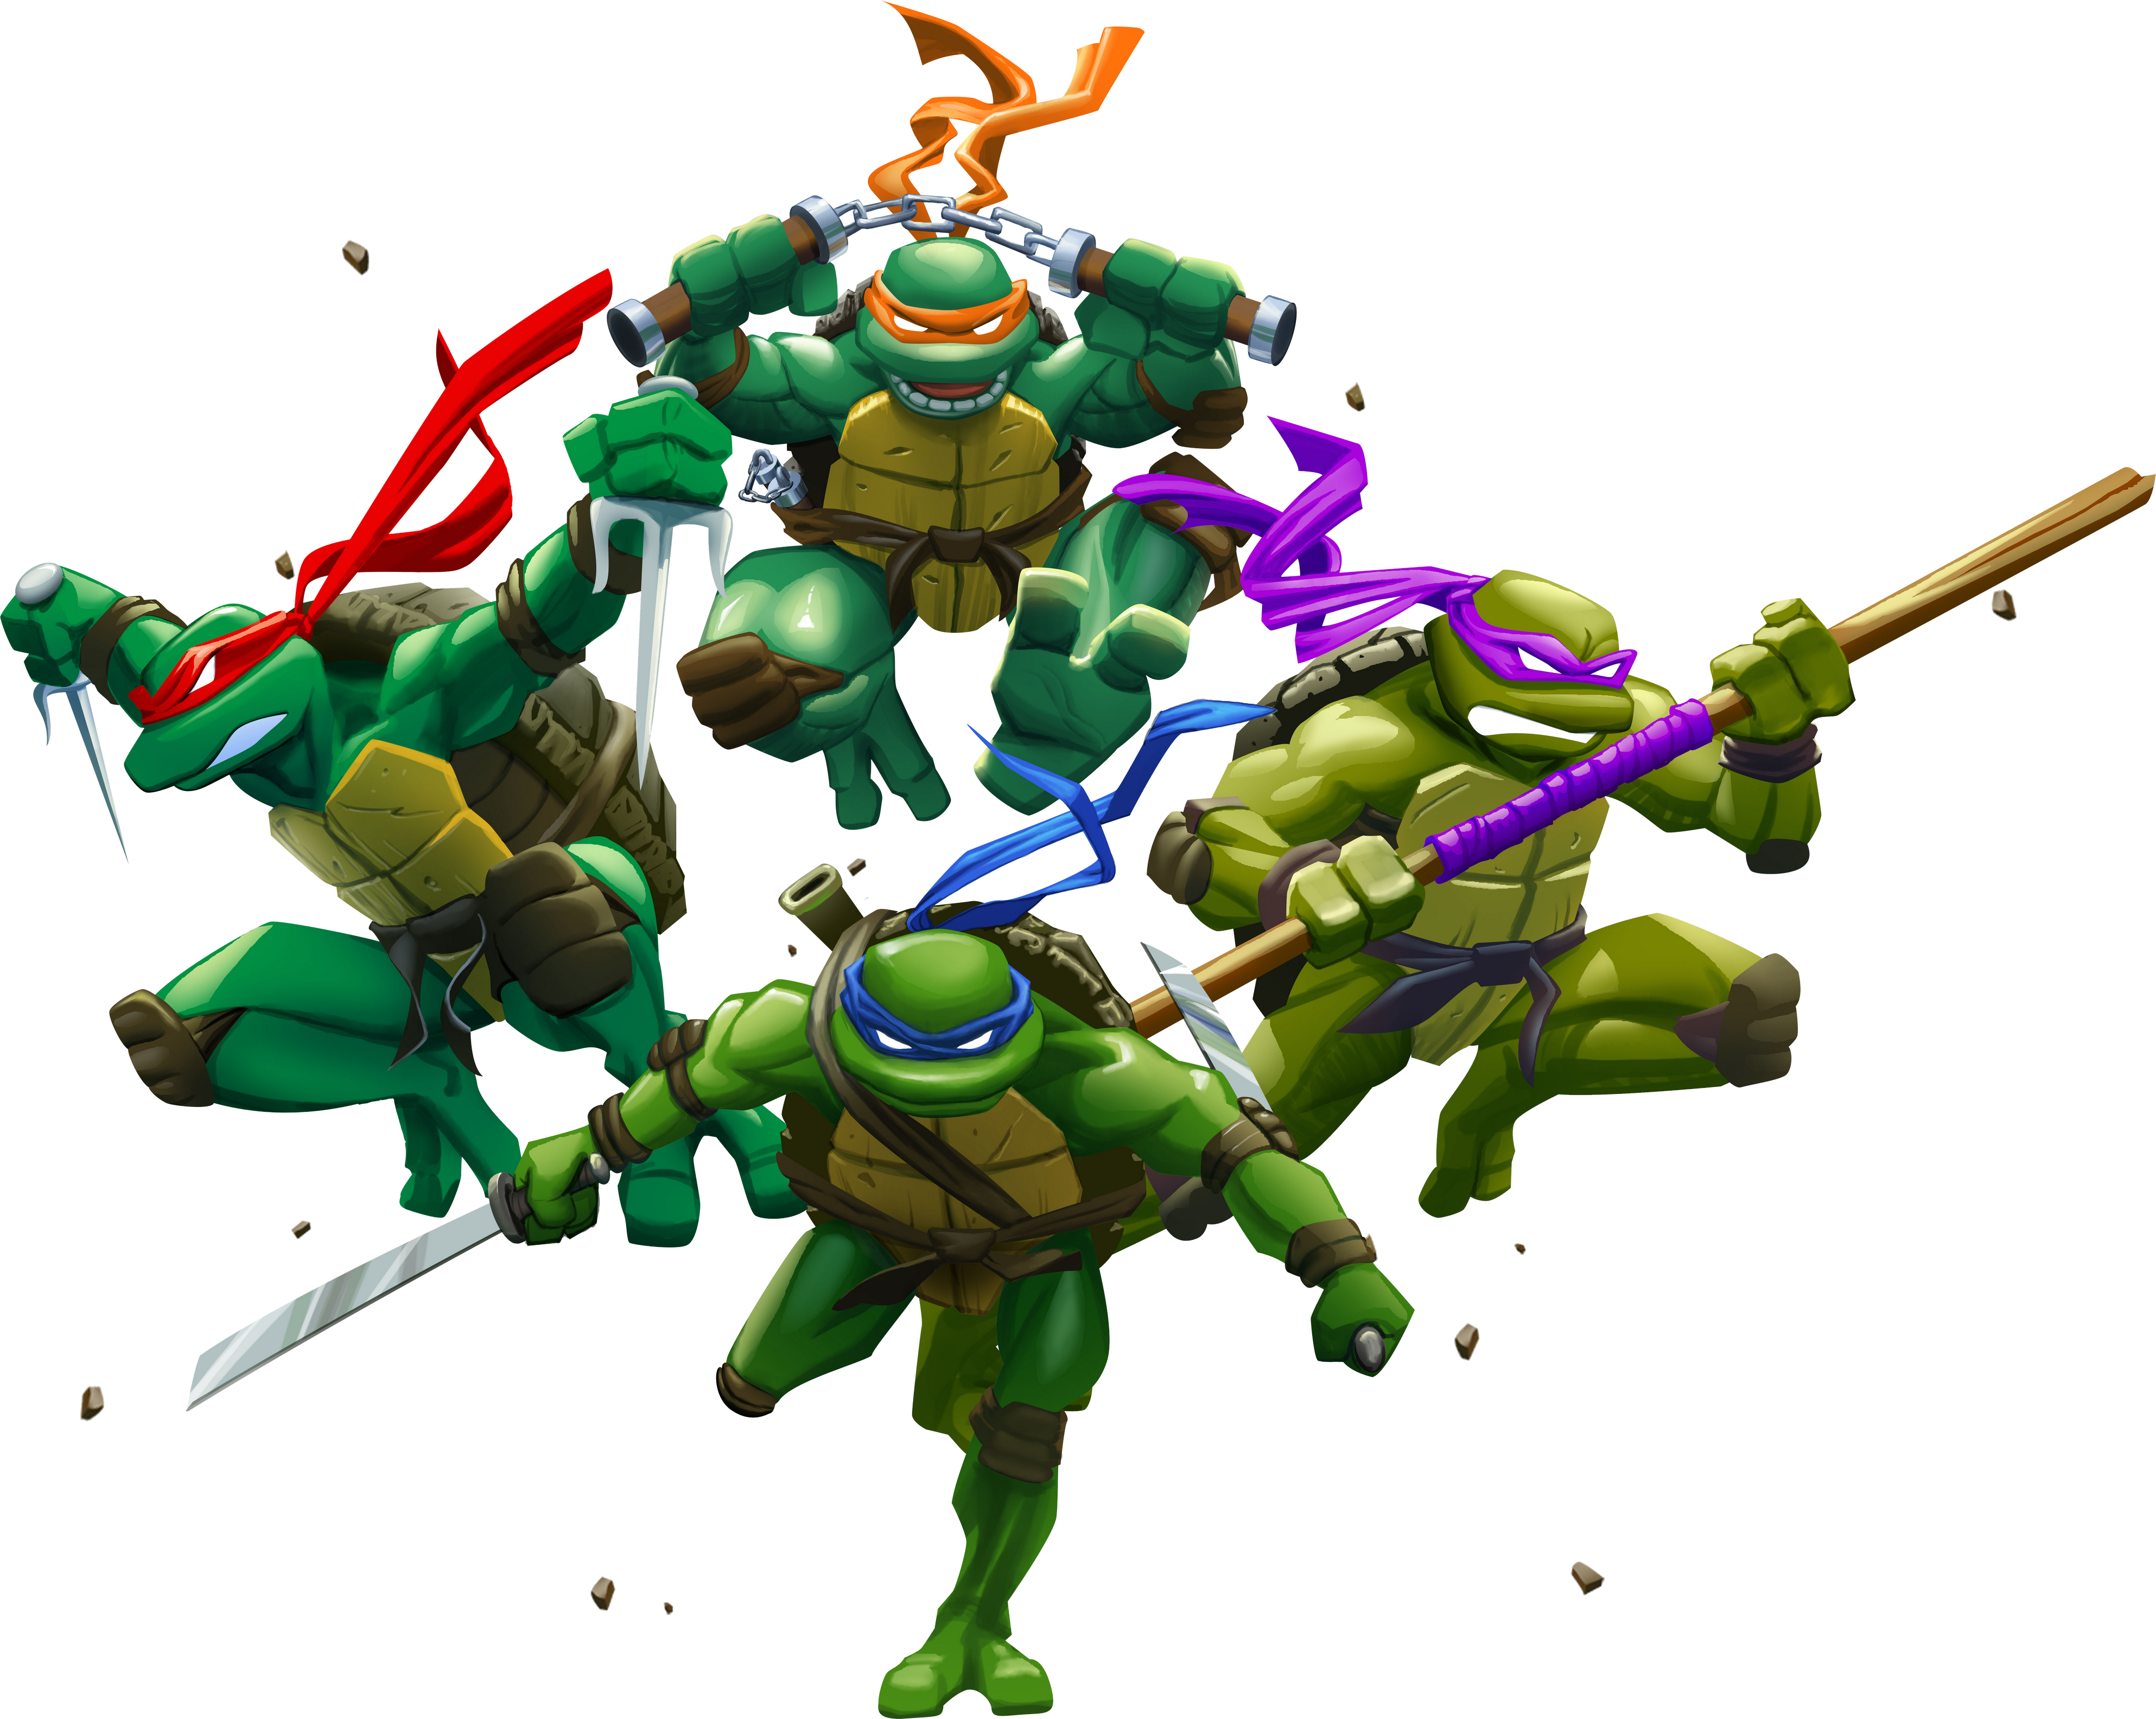 Ninja Turtle’s